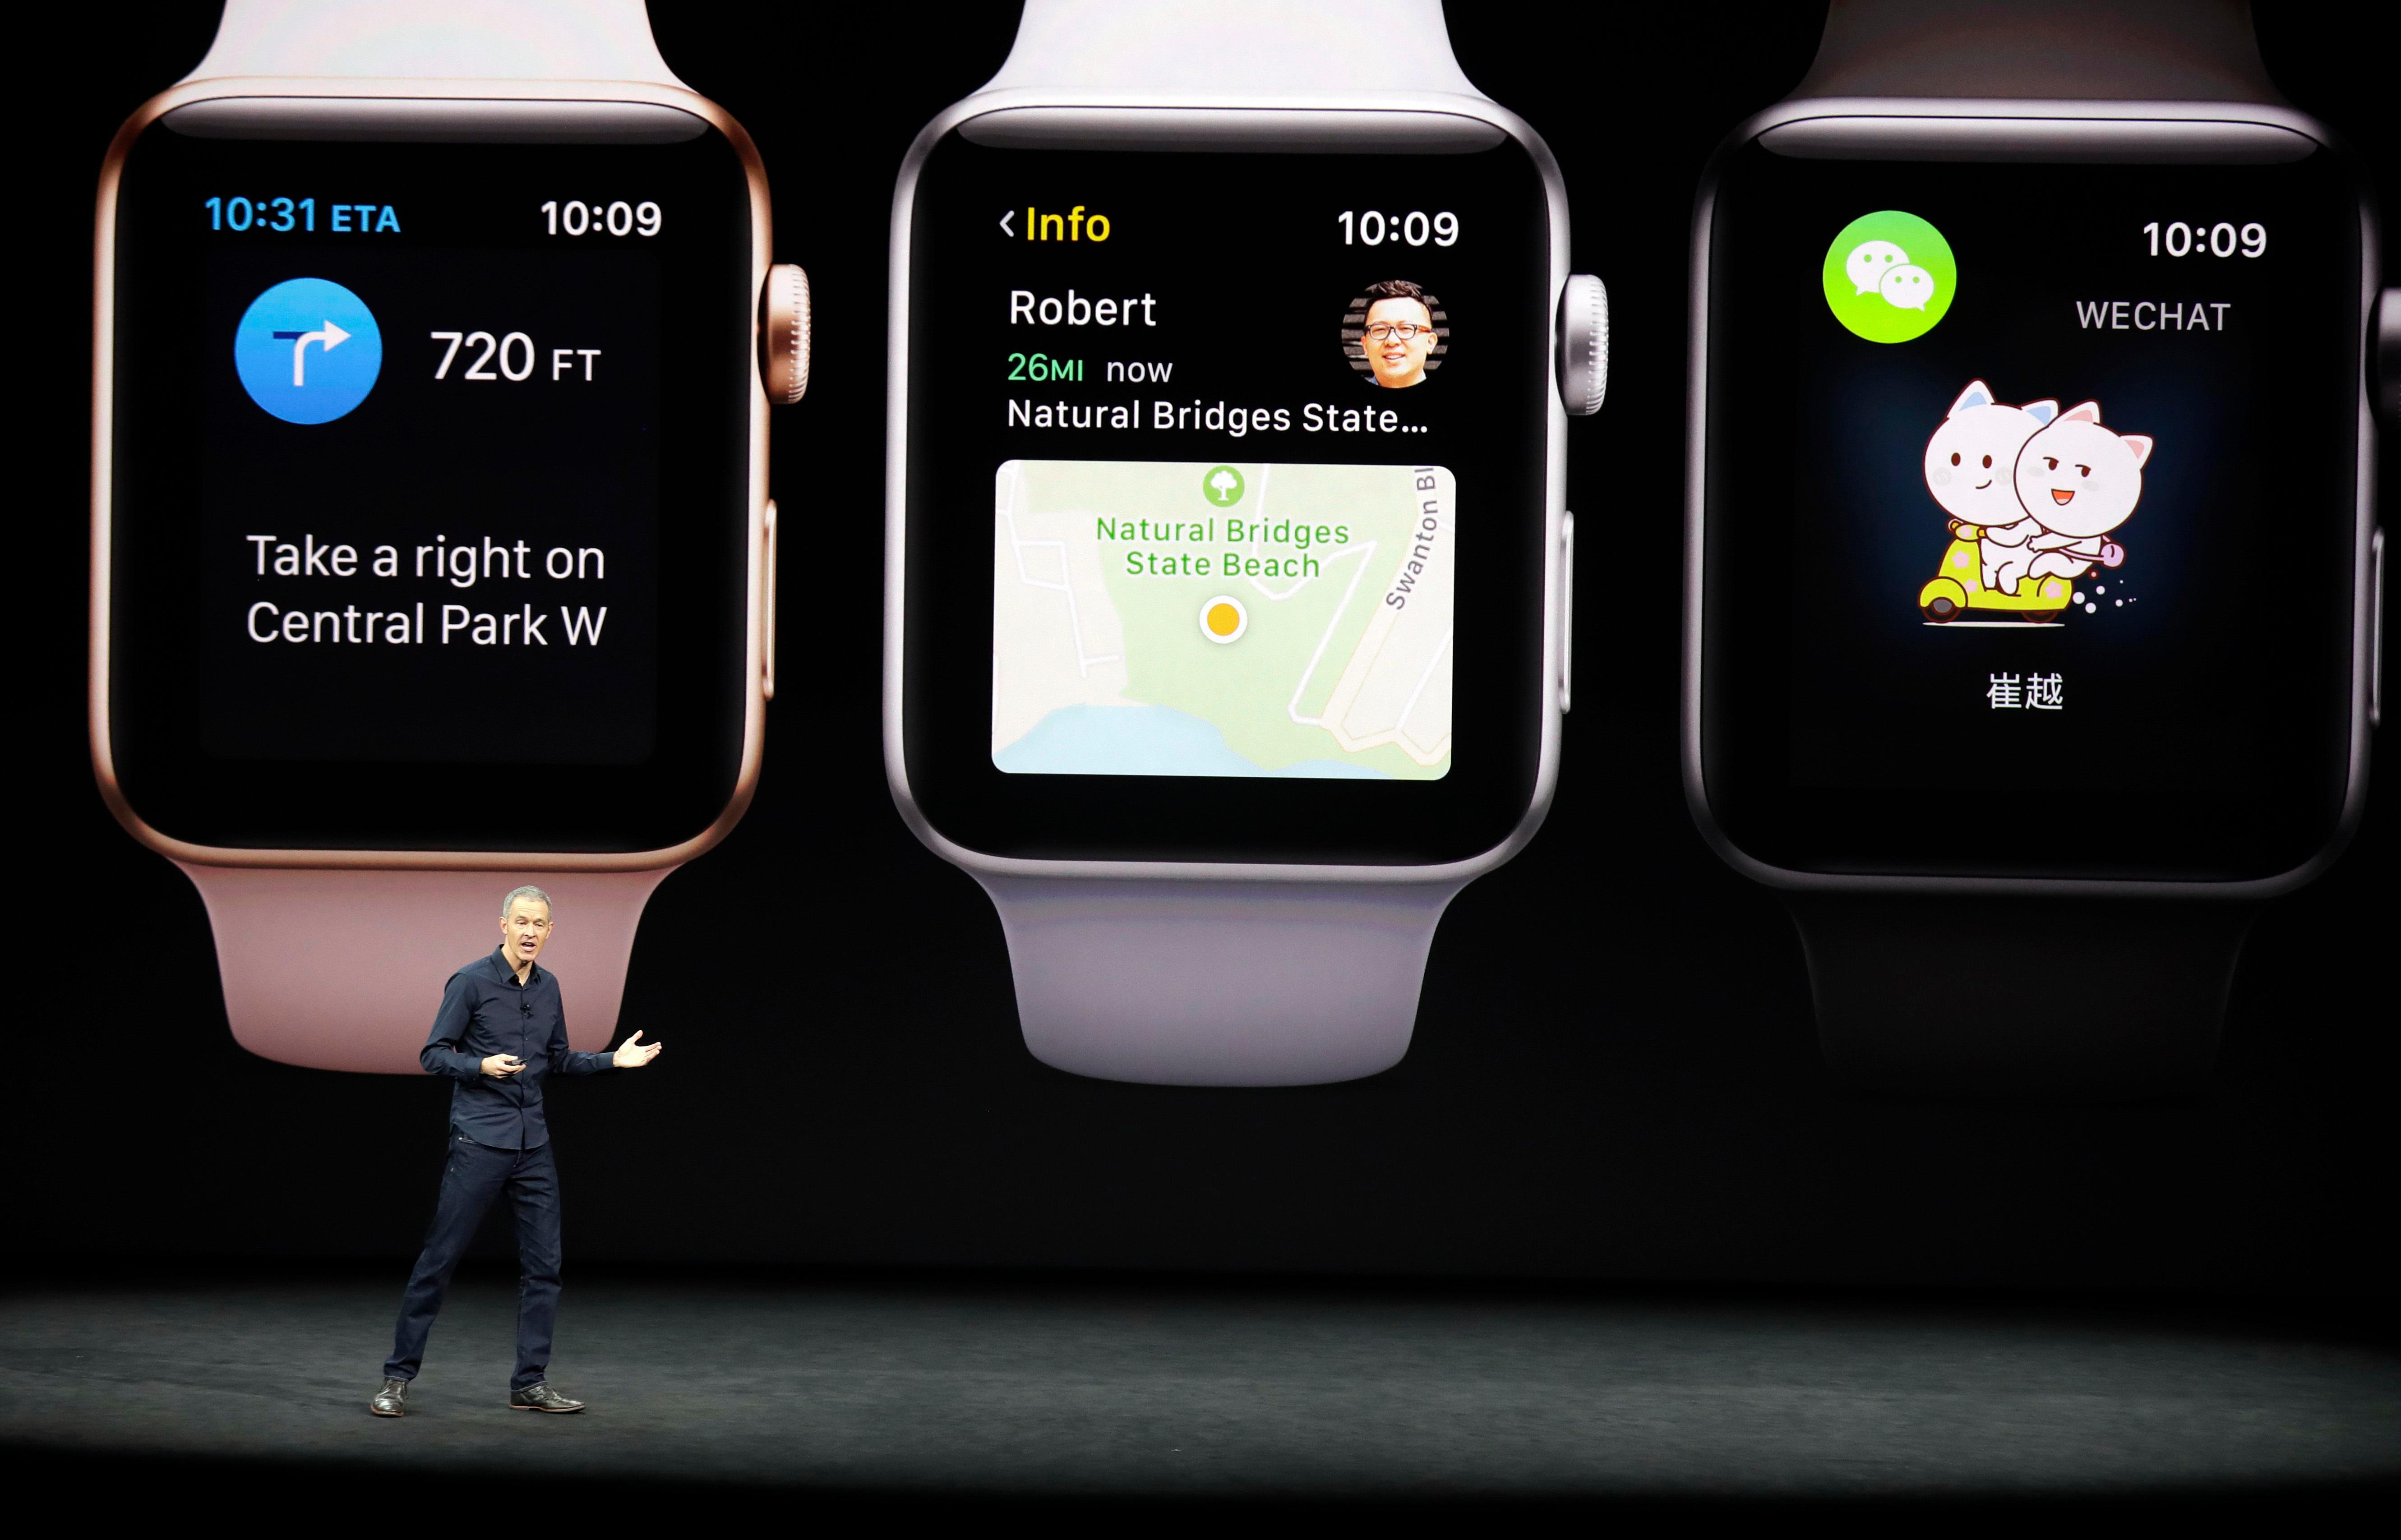  Apple menolak untuk mengatakan berapa banyak Jam tangan yang dijualnya tetapi mengklaim sebagai salah satu produsen terbesar